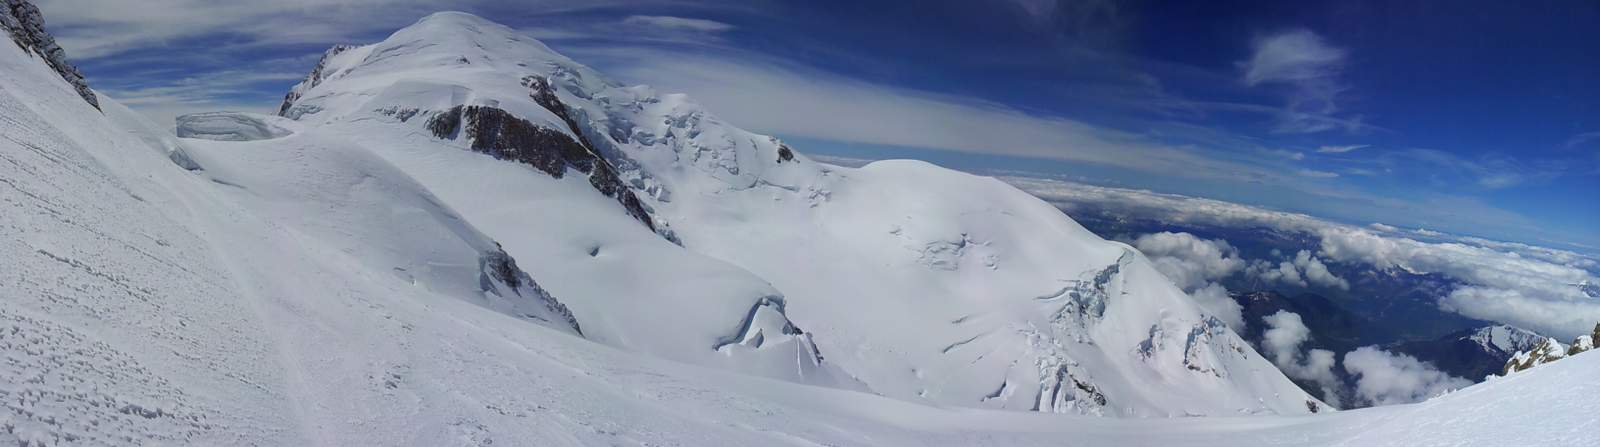 Mt Blanc : Objectif en vue